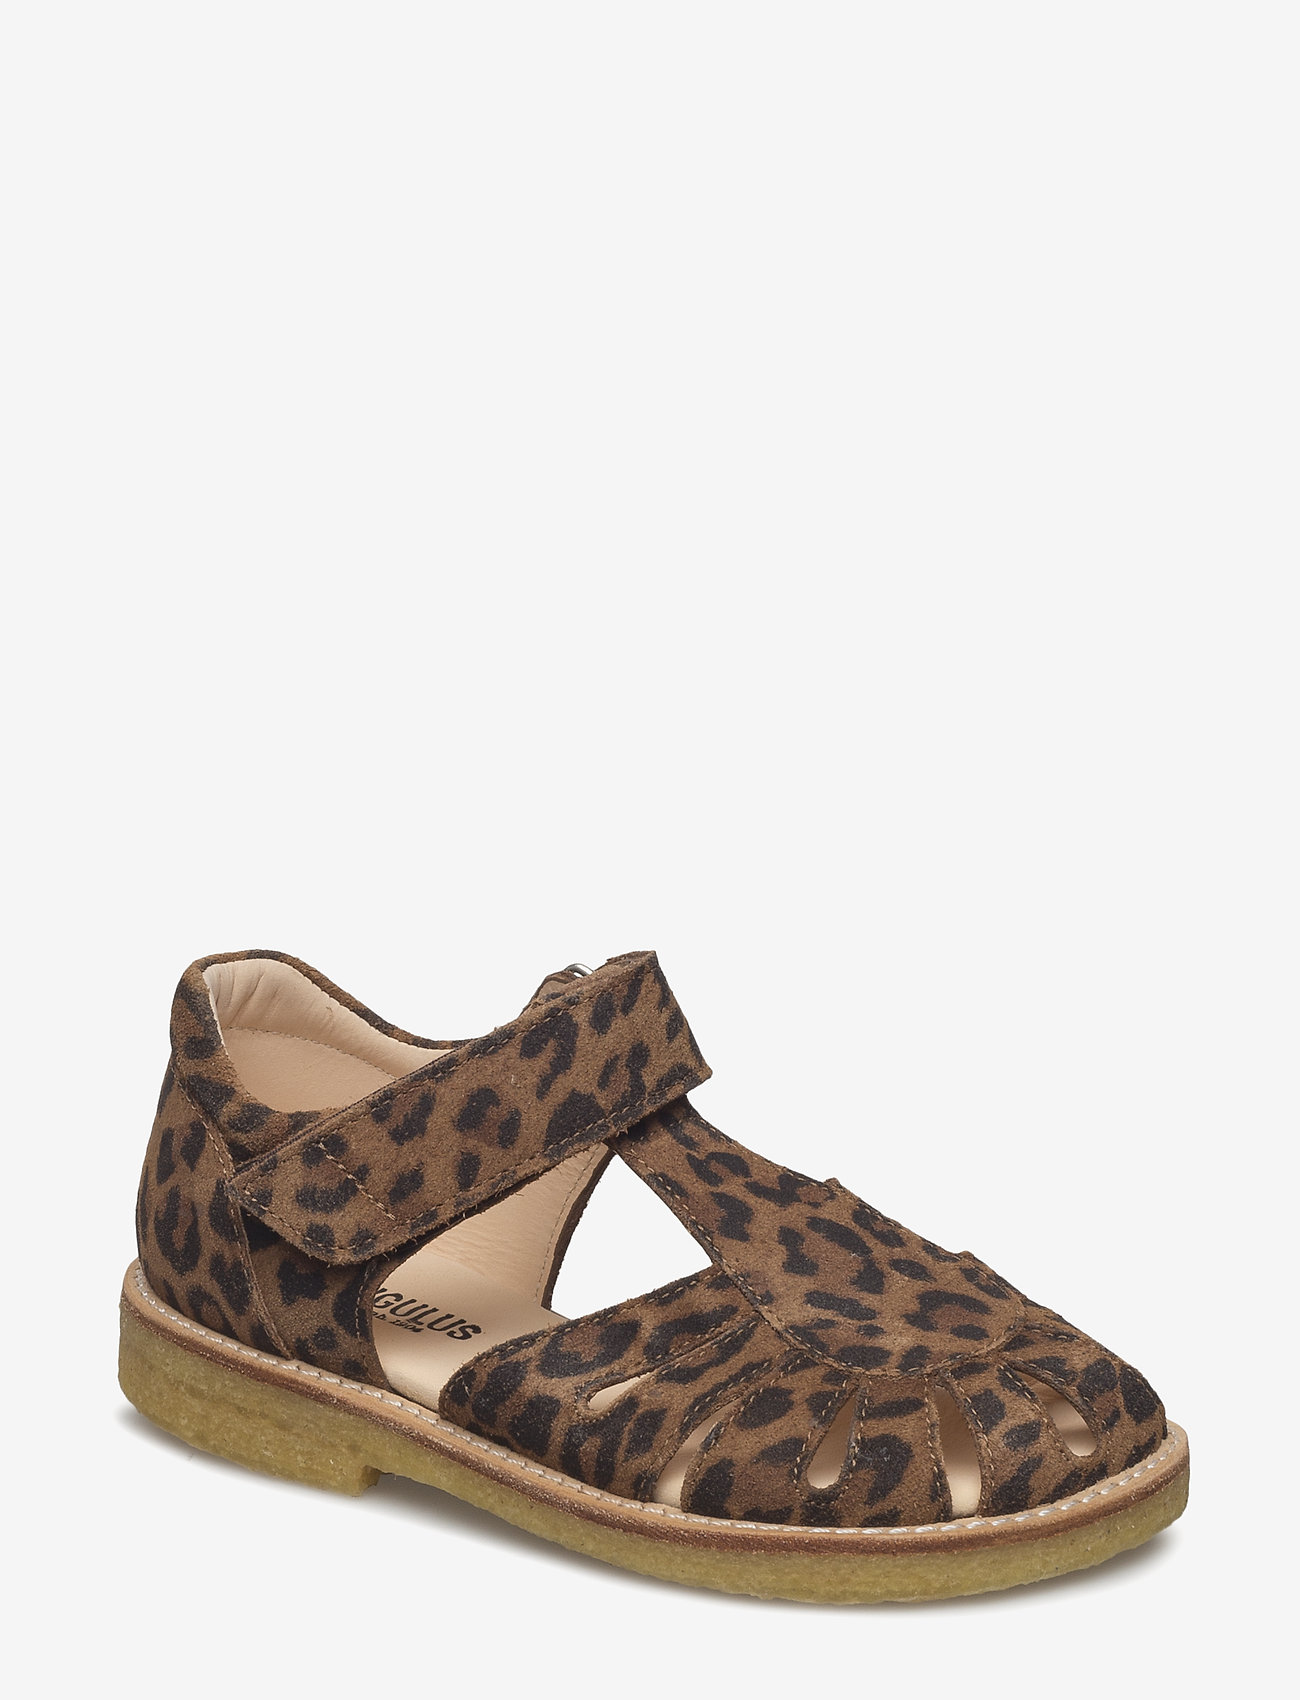 ANGULUS - Sandals - flat - closed toe -  - sandales à brides - 2164 leopard - 0